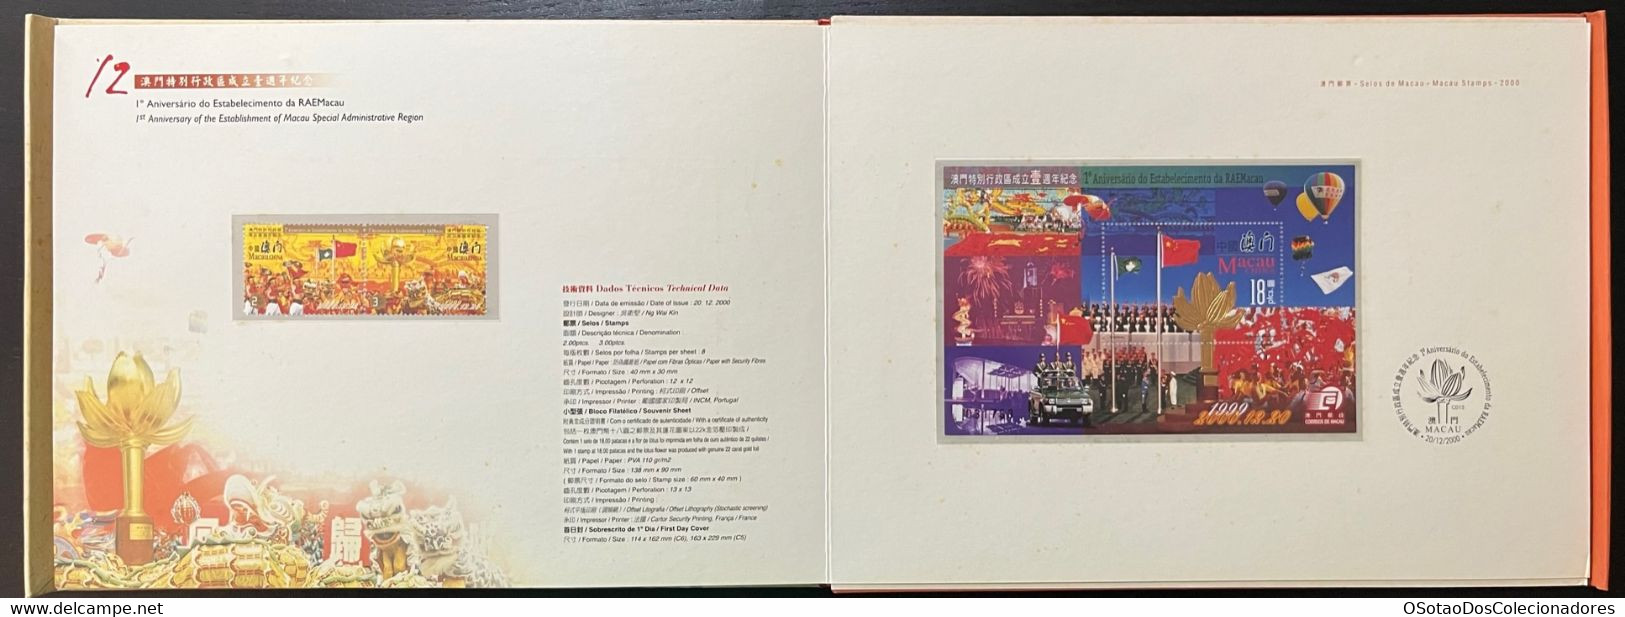 Macau Macao - China Chine - Annual Album 2000 - Macao's Stamps - Livro Anual de Selos de Macau 2000 - Carteira Jaarboek